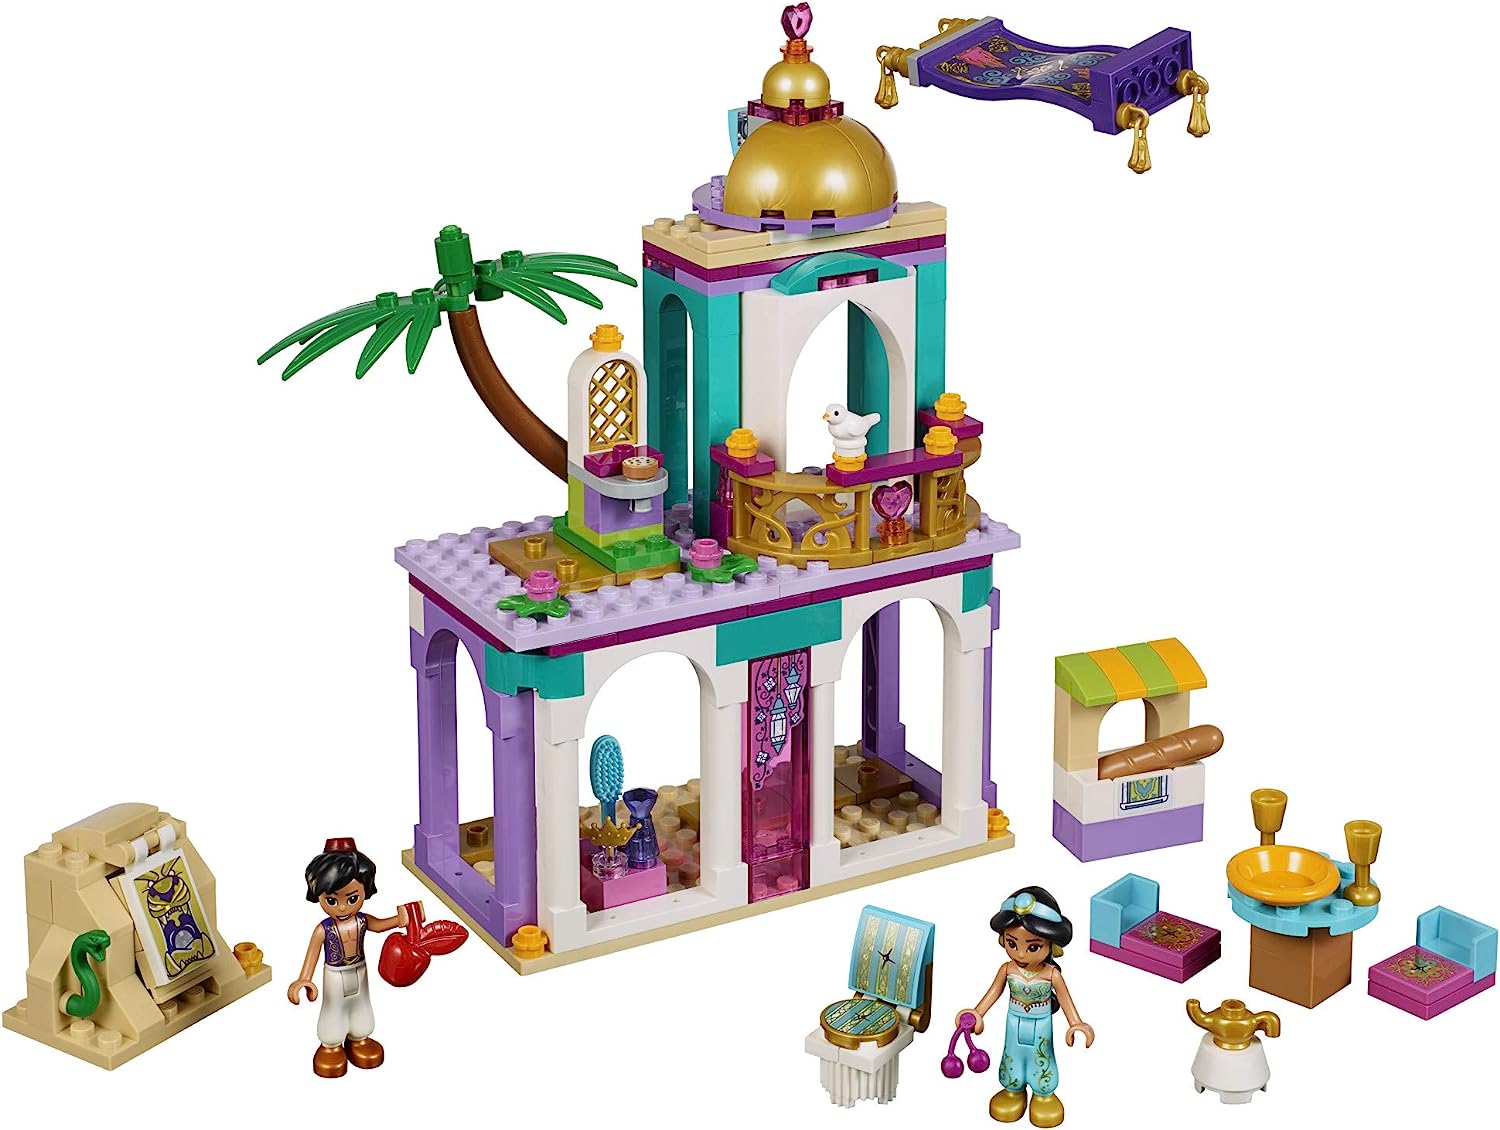 レゴ 【送料無料】LEGO Disney Aladdin and Jasmine’s Palace Adventures 41161 Building Kit (193 Pieces) (Discontinued by Manufacturer)レゴ